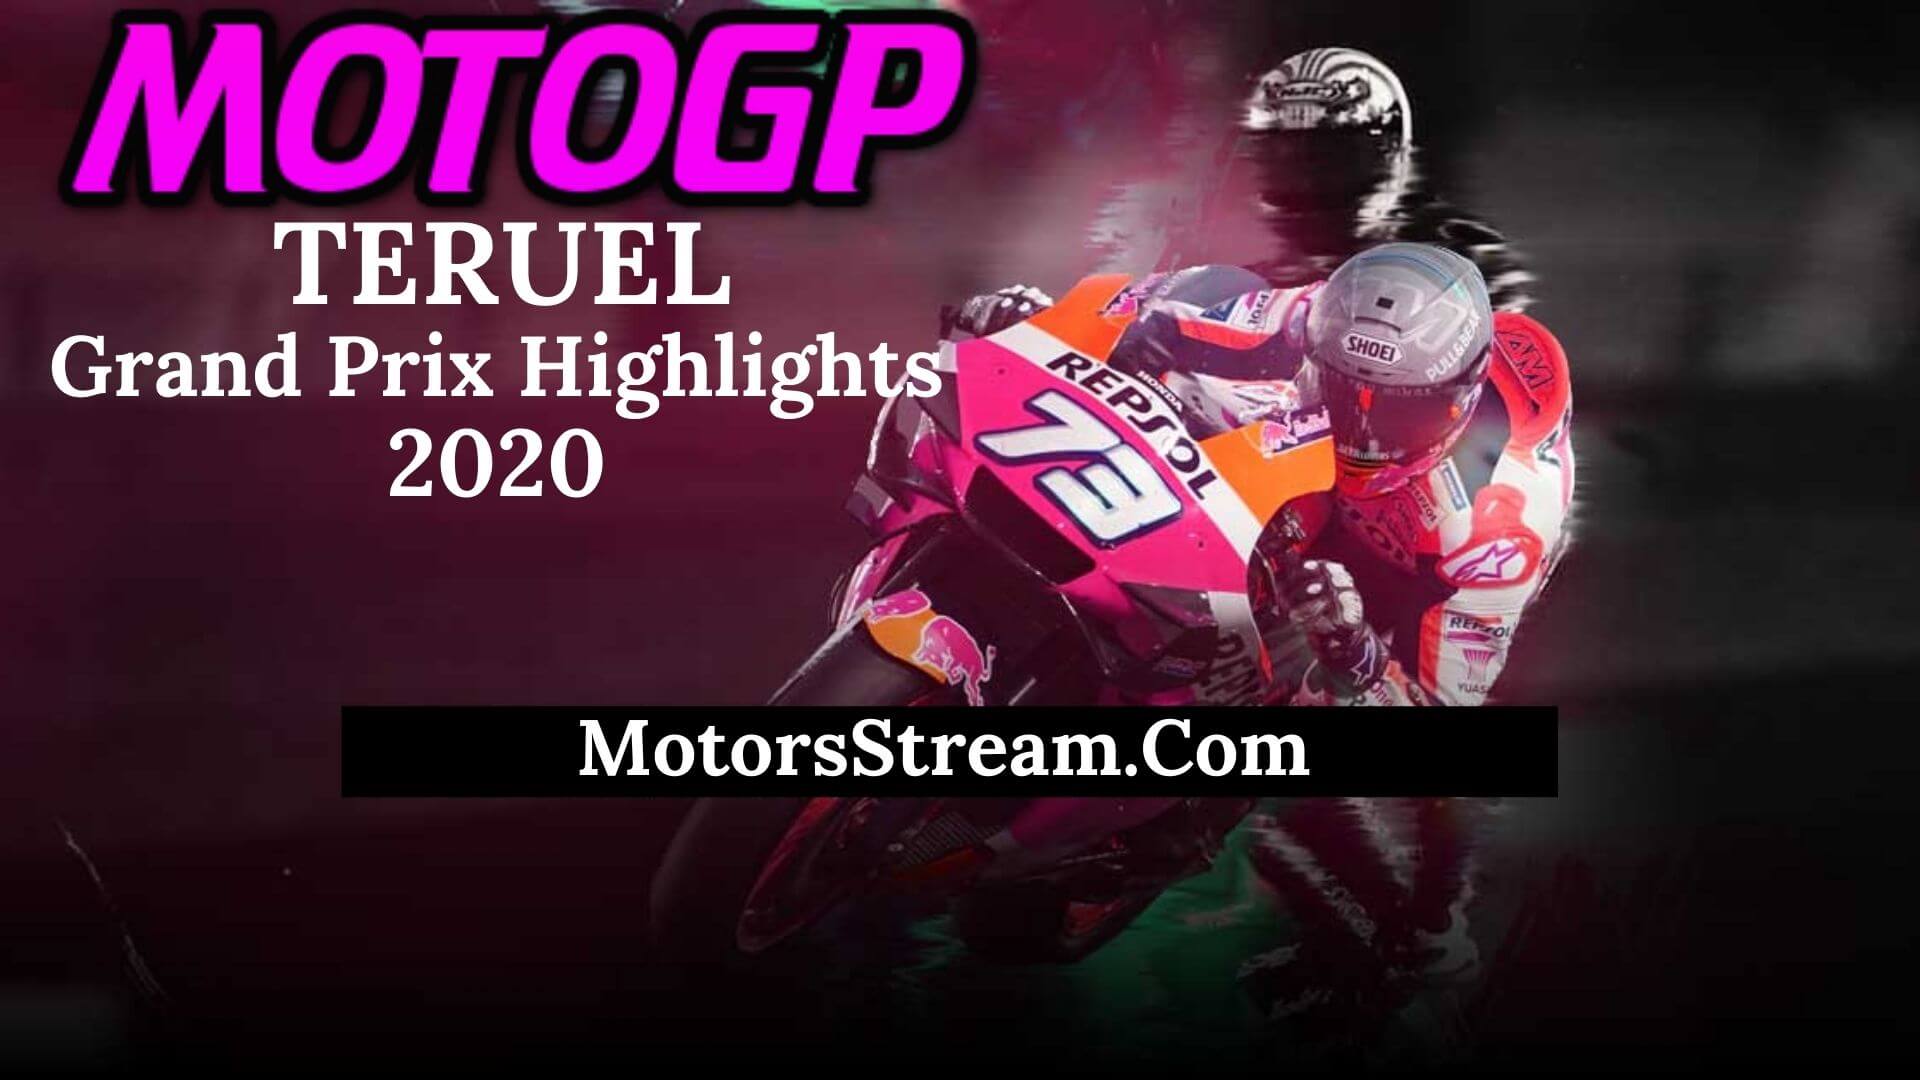 Teruel Grand Prix Highlights 2020 MotoGP